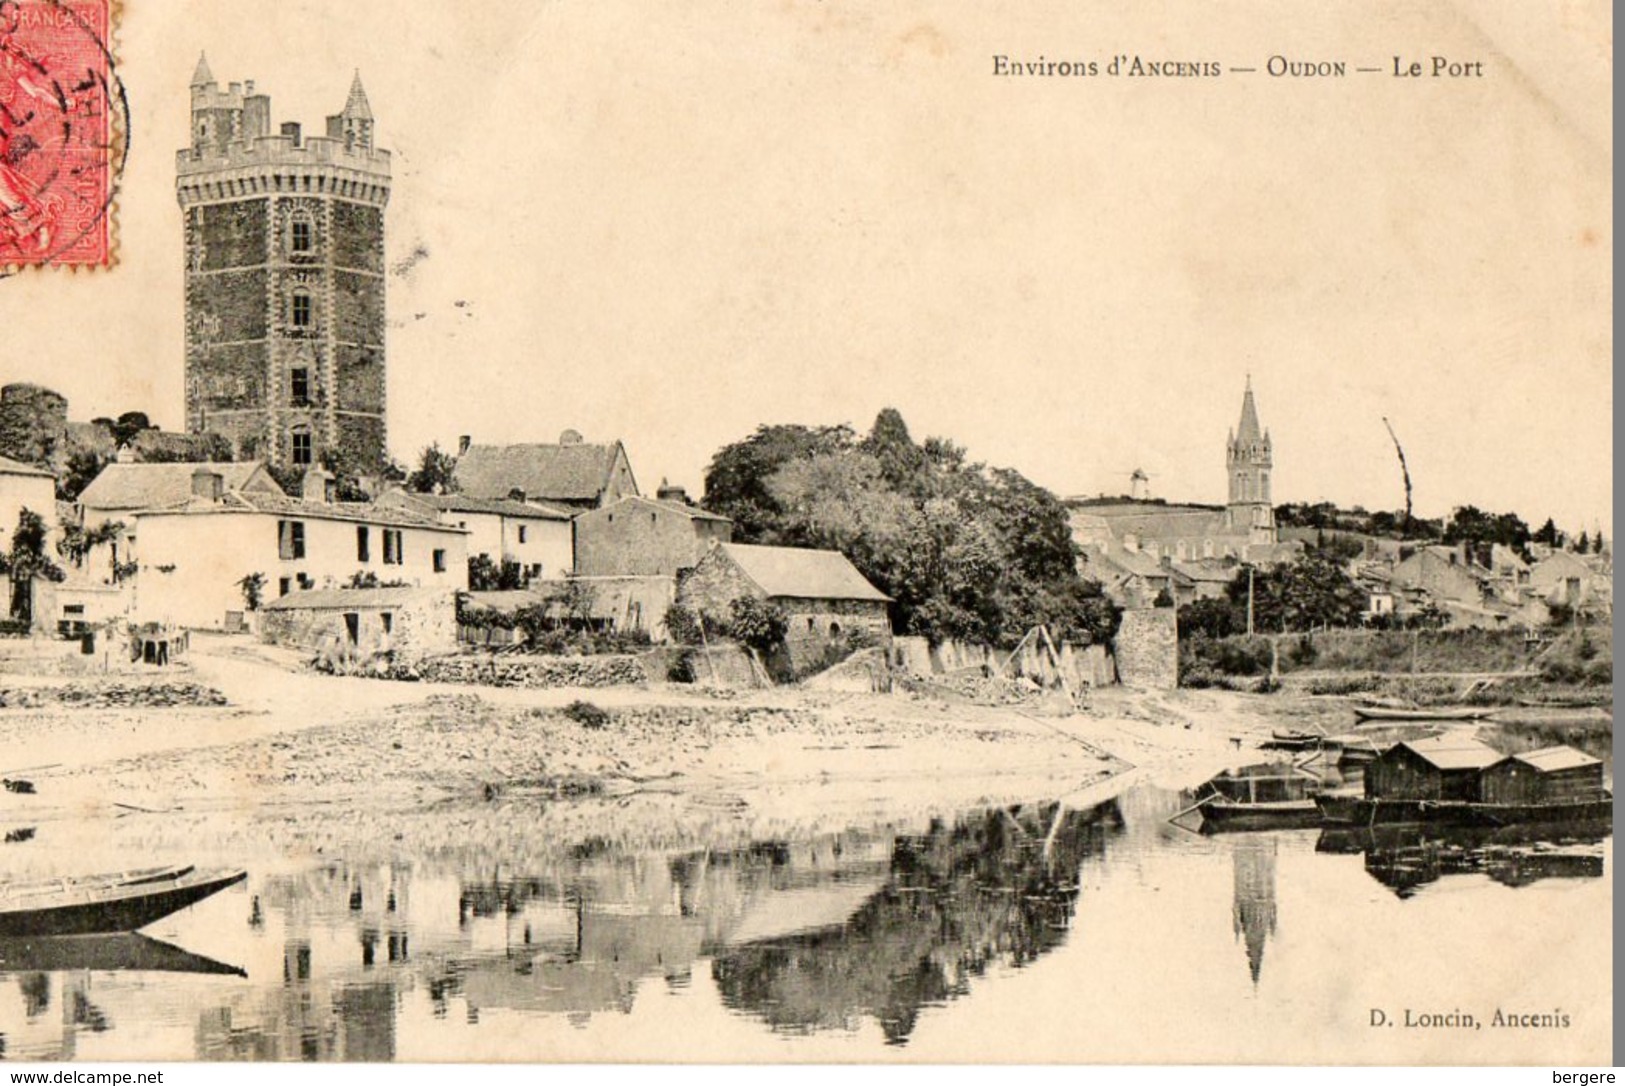 44. CPA. OUDON, Près Ancenis, Le Port, La Tour, église. - Oudon